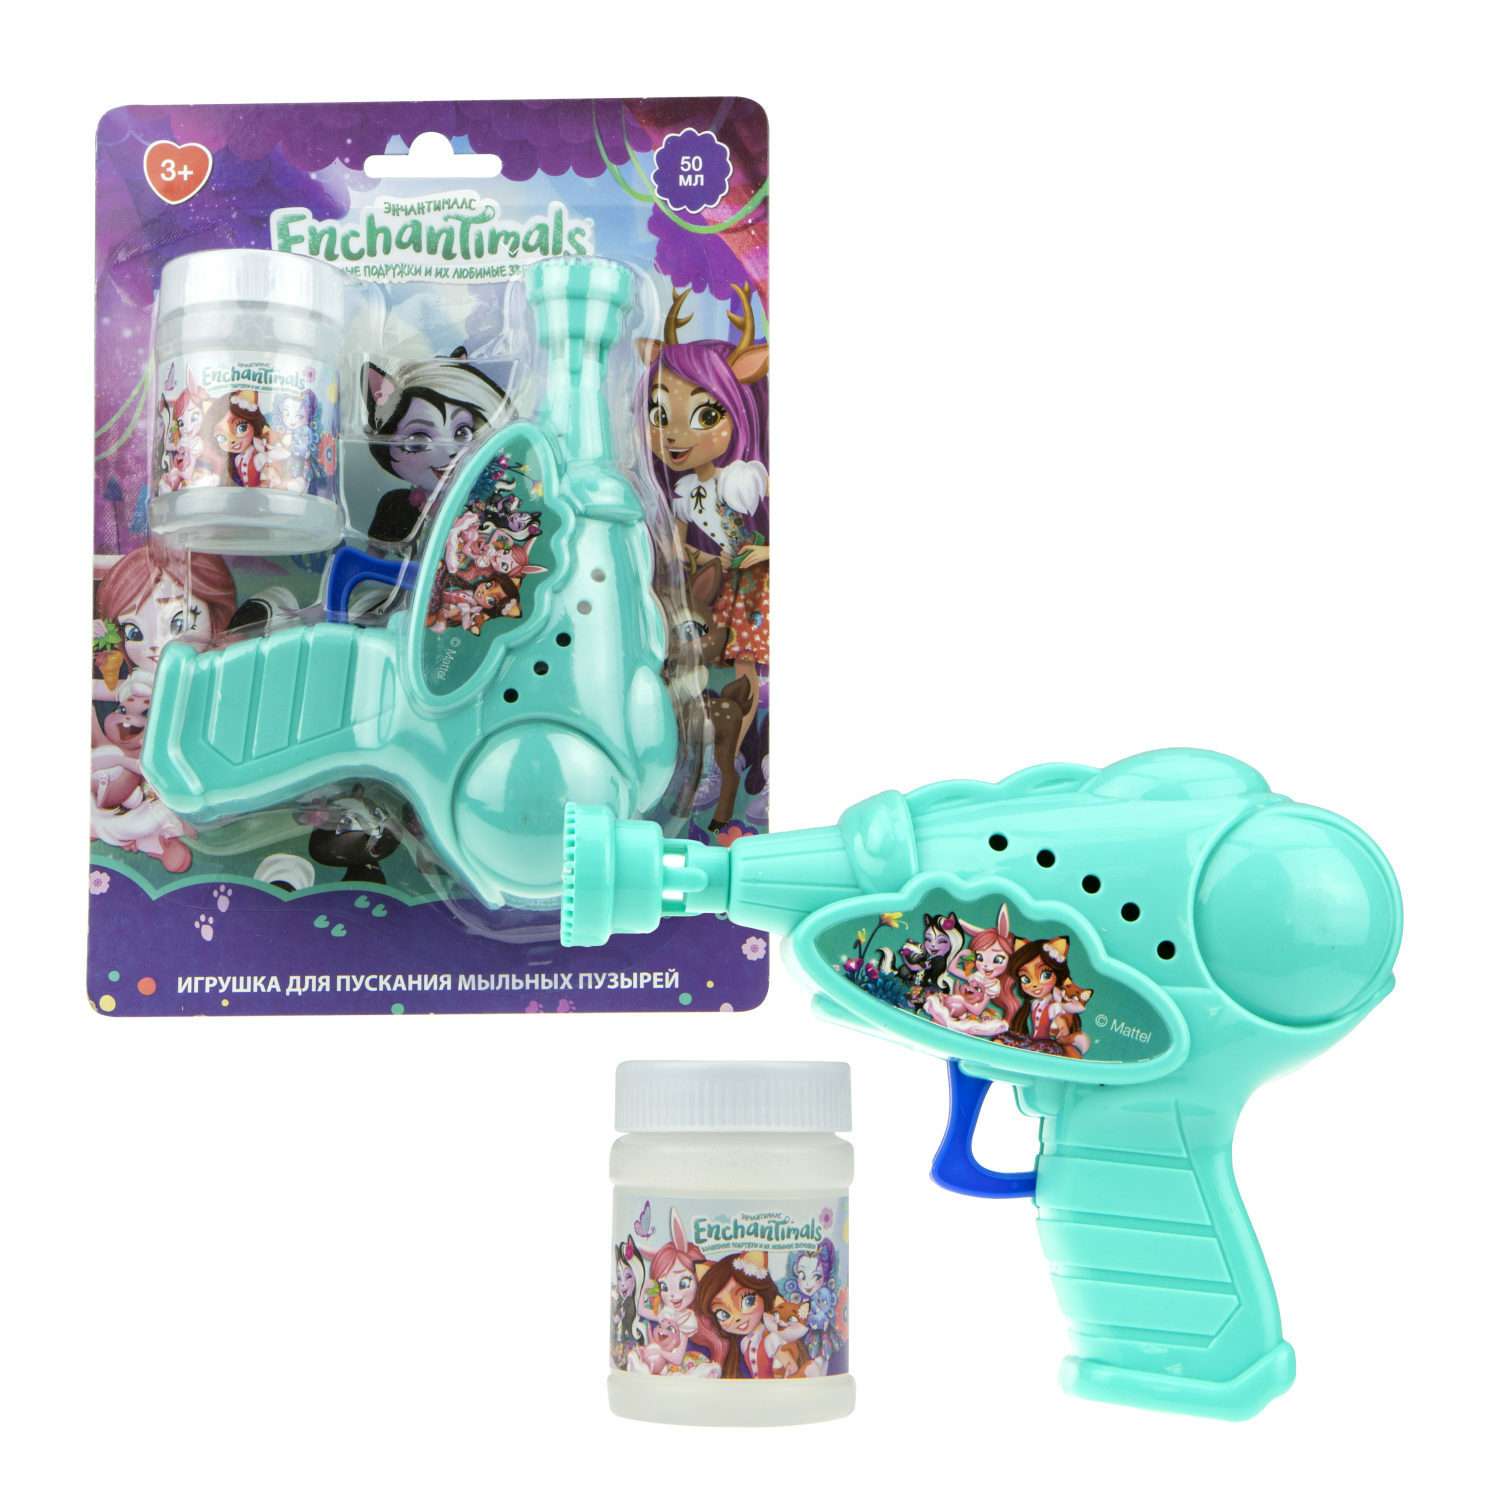 Генератор мыльных пузырей Enchantimals 1YOY с раствором пистолет бластер аппарат детские игрушки для улицы и дома для девочек - фото 2